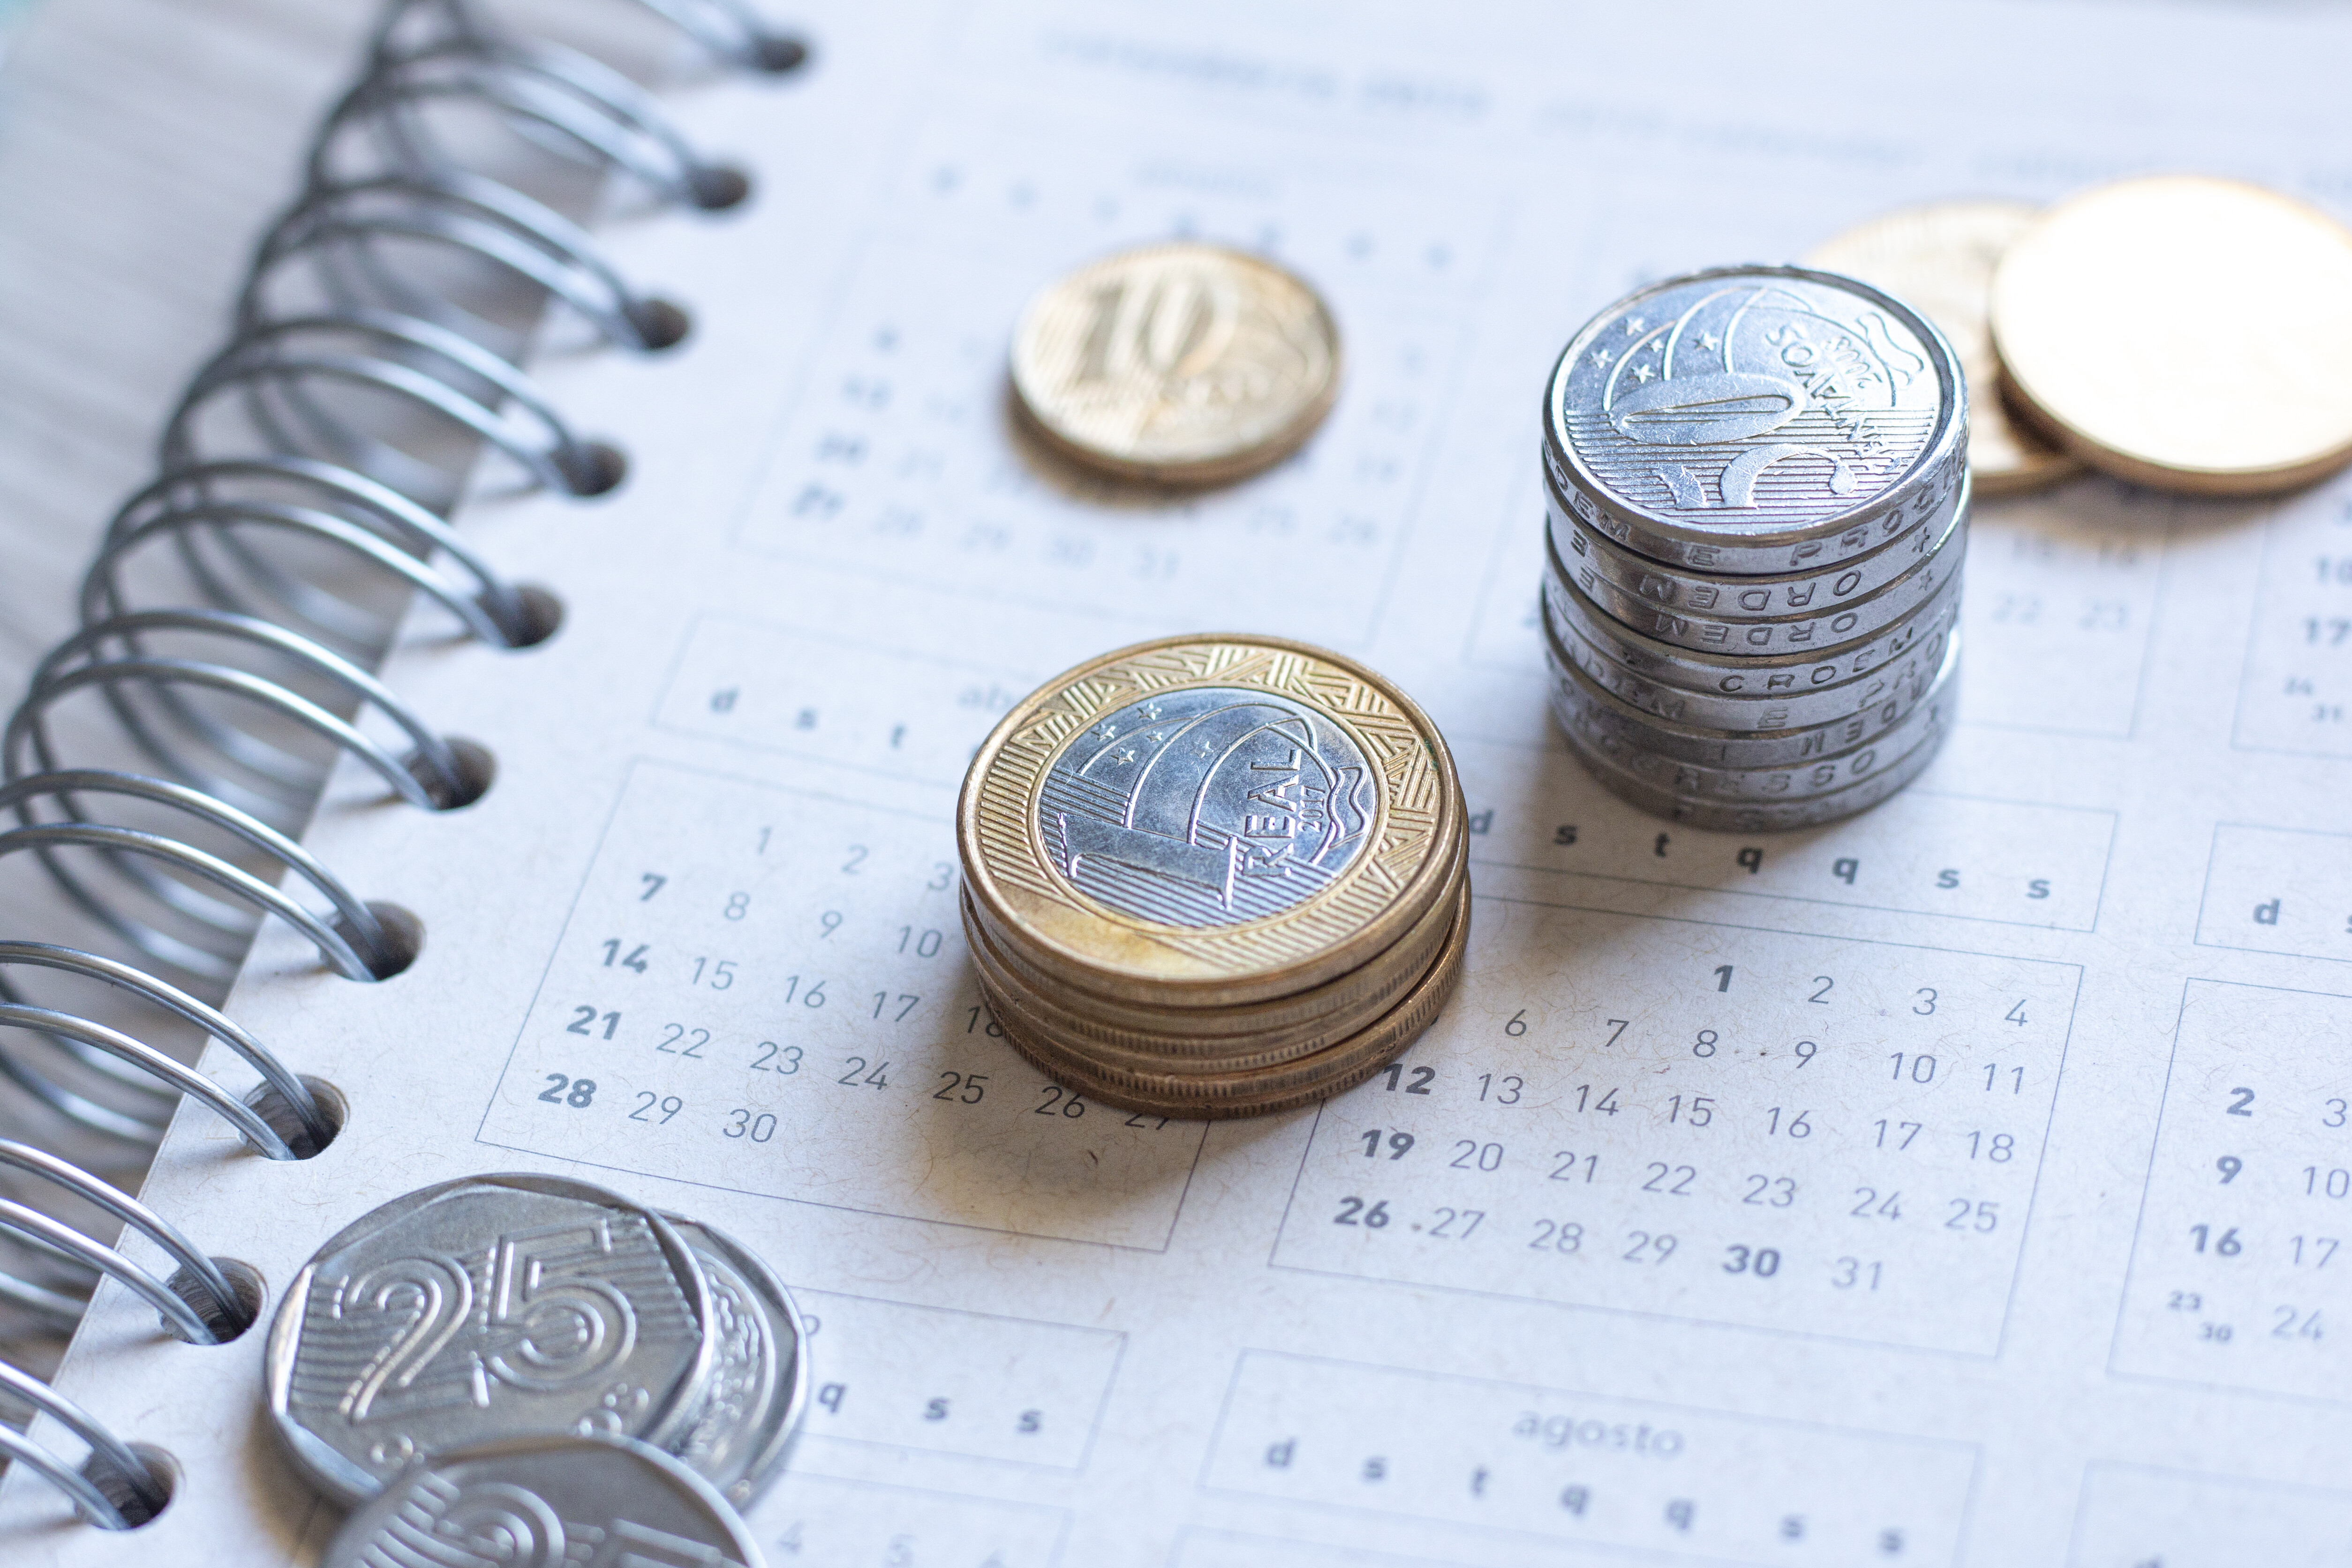 A imagem mostra várias moedas em cima de um caderno.